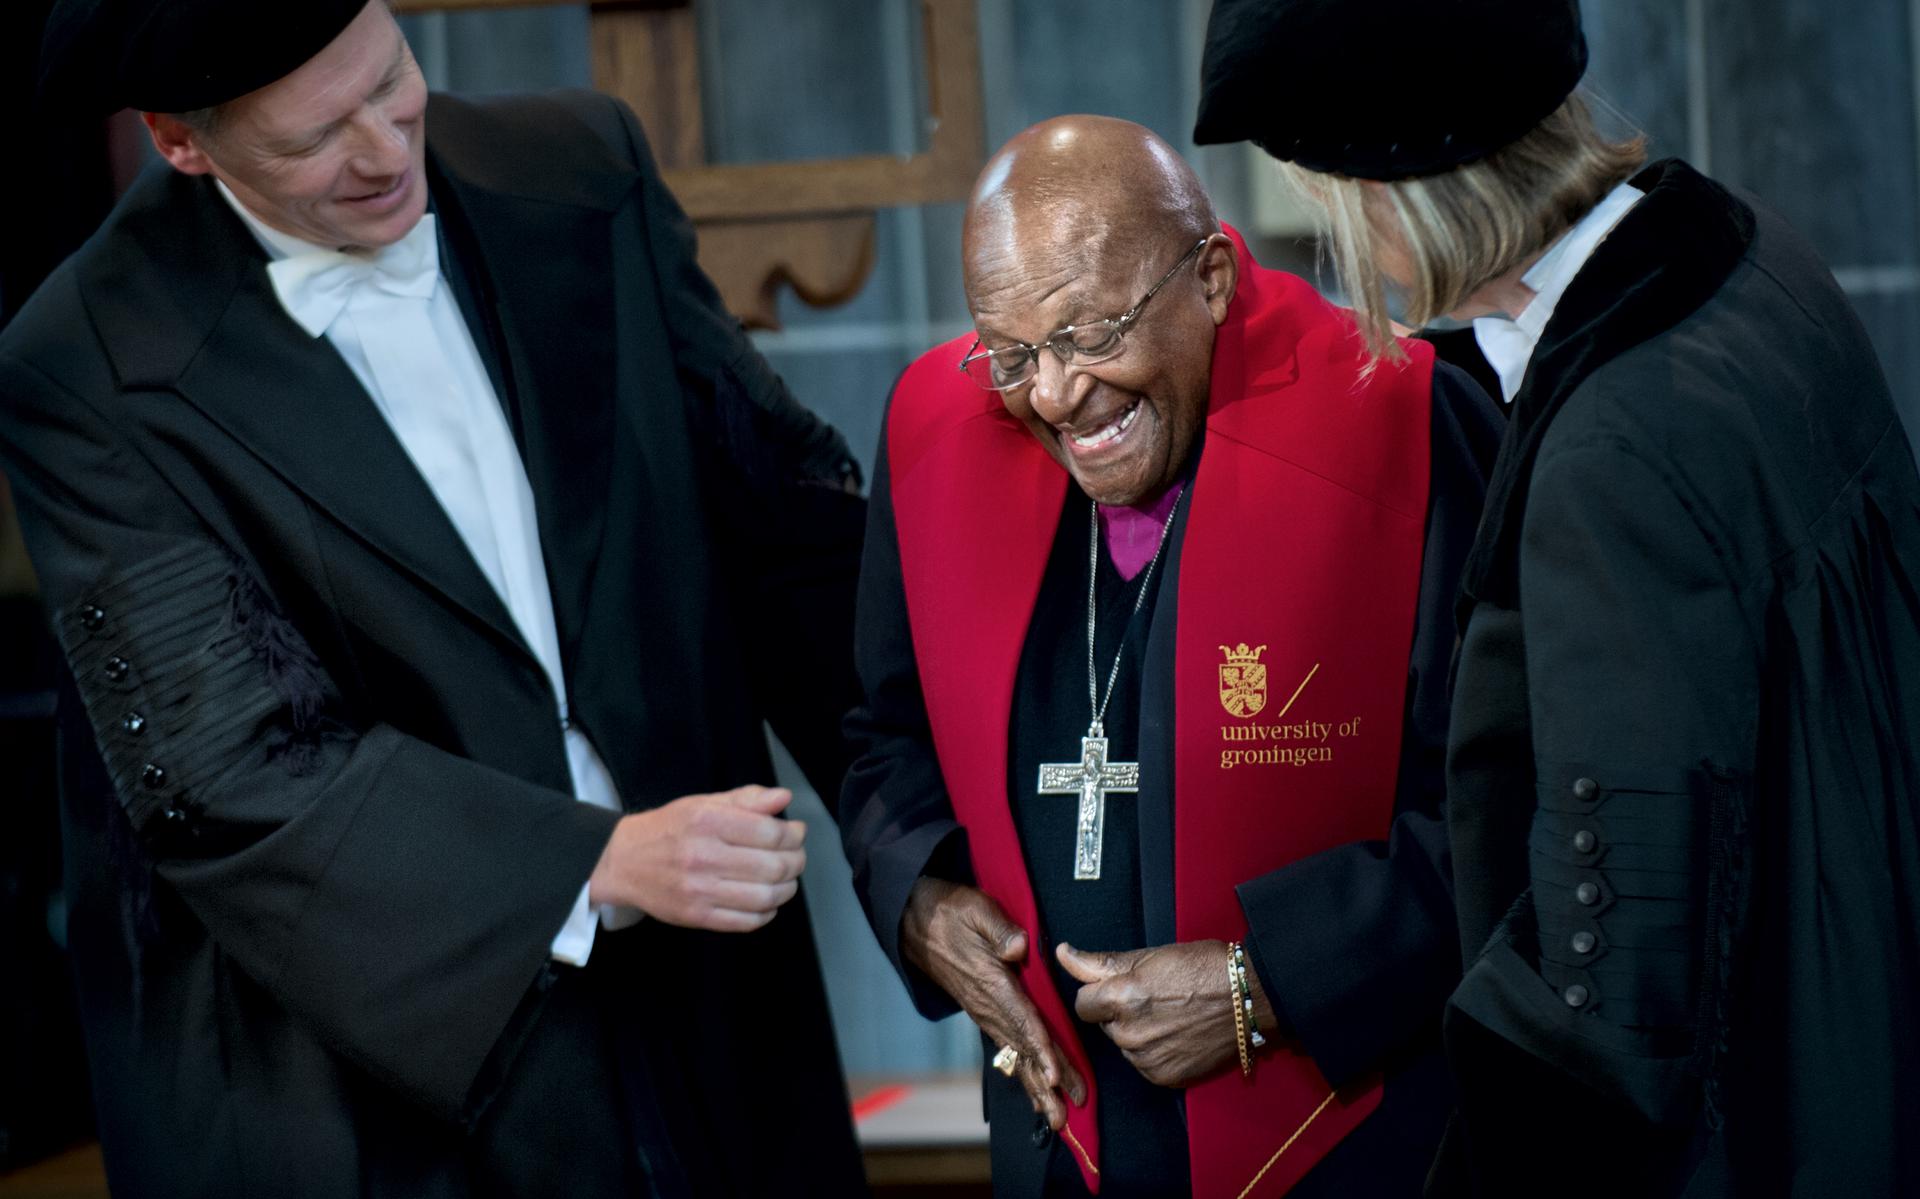 Bisschop Tutu krijgt in 2012 de versierselen omgehangen die horen bij het eredoctoraat van de Rijksuniversiteit Groningen.